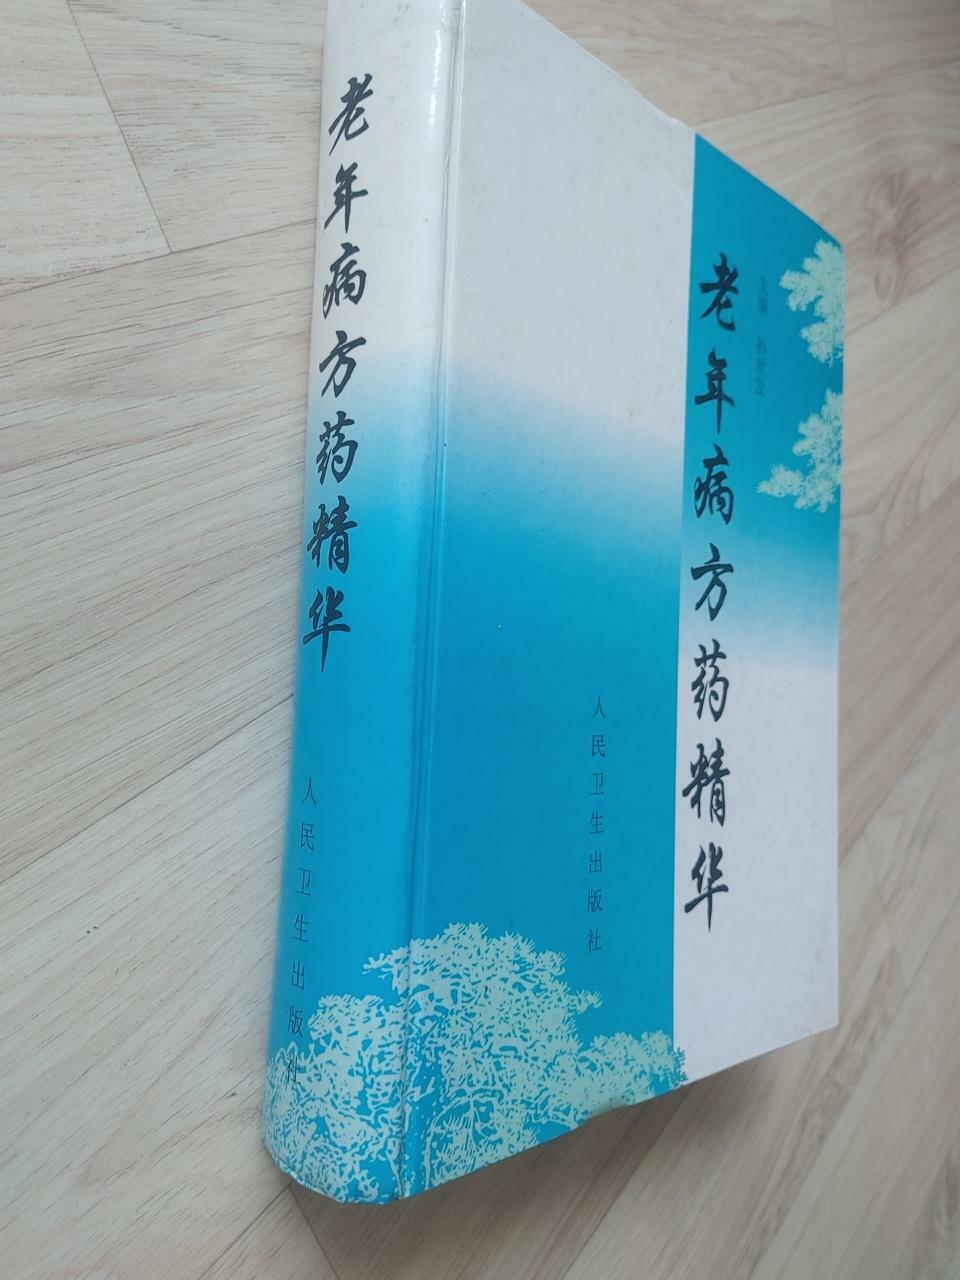 [중고] 老年病方藥精華, 孫世發 외, 人民衞生出版社, 1999 (양장)